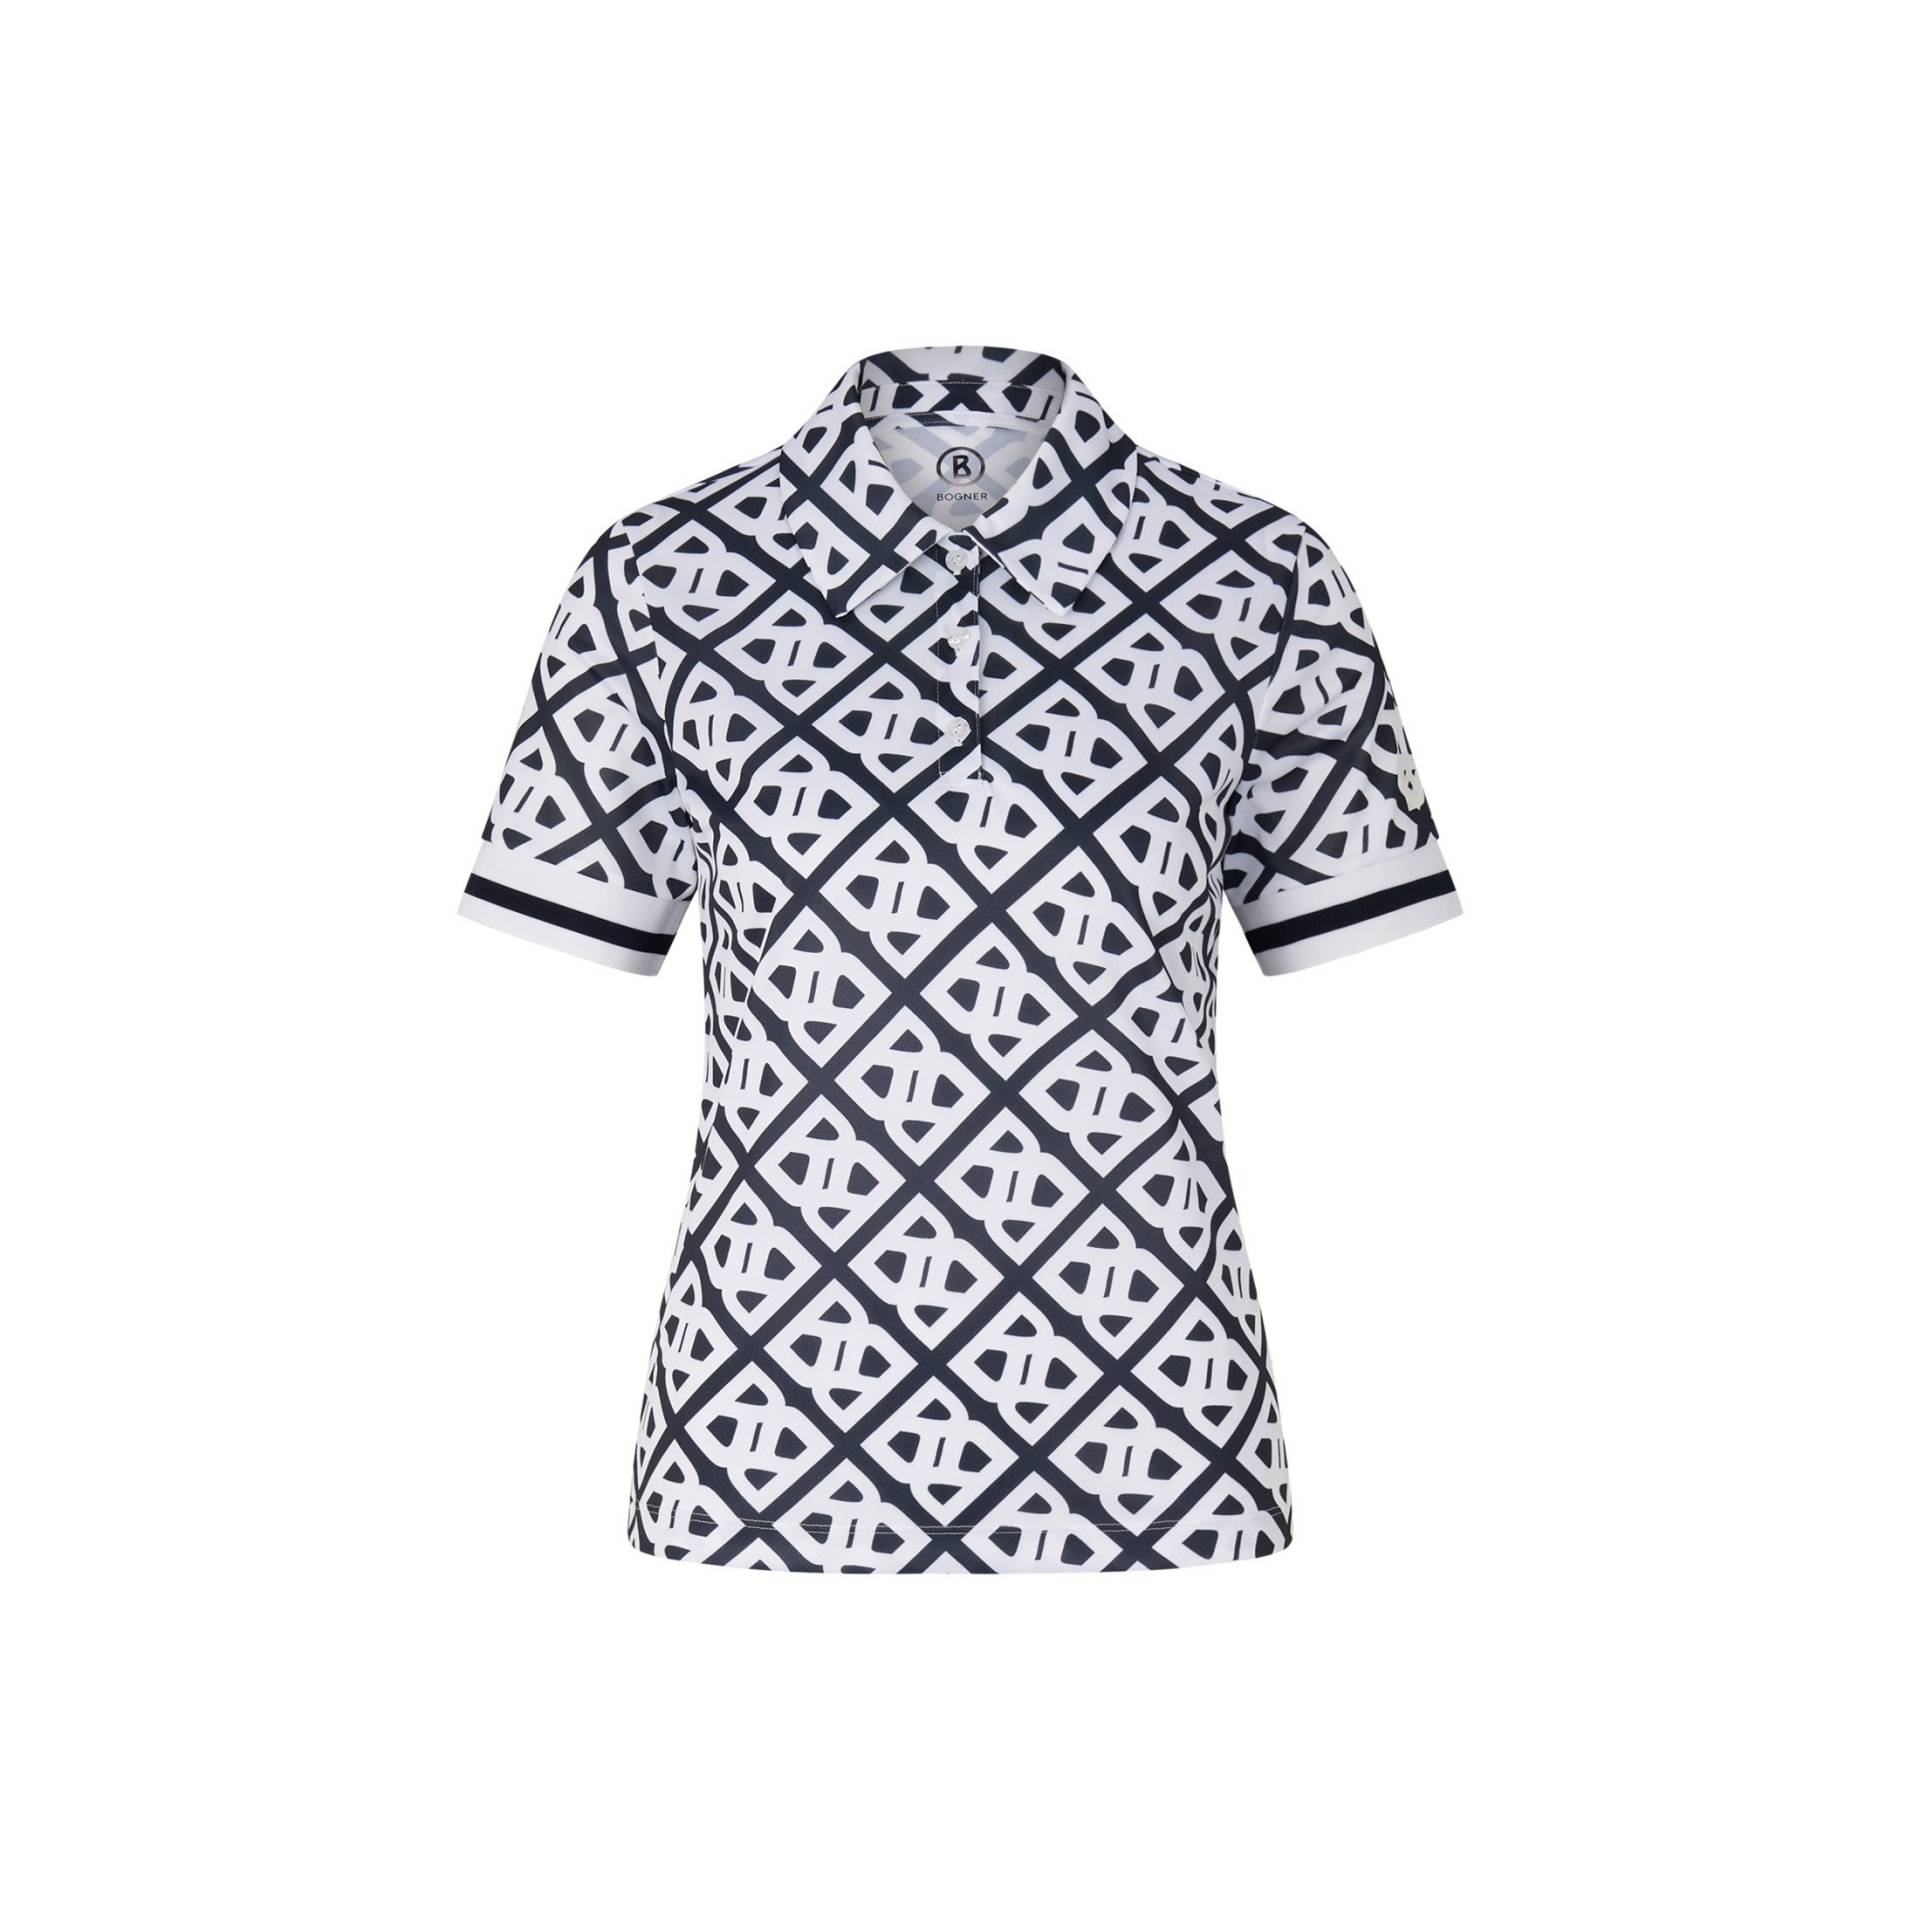 BOGNER SPORT Funktions-Polo-Shirt Calysa für Damen - Navy-Blau/Weiß von BOGNER Sport